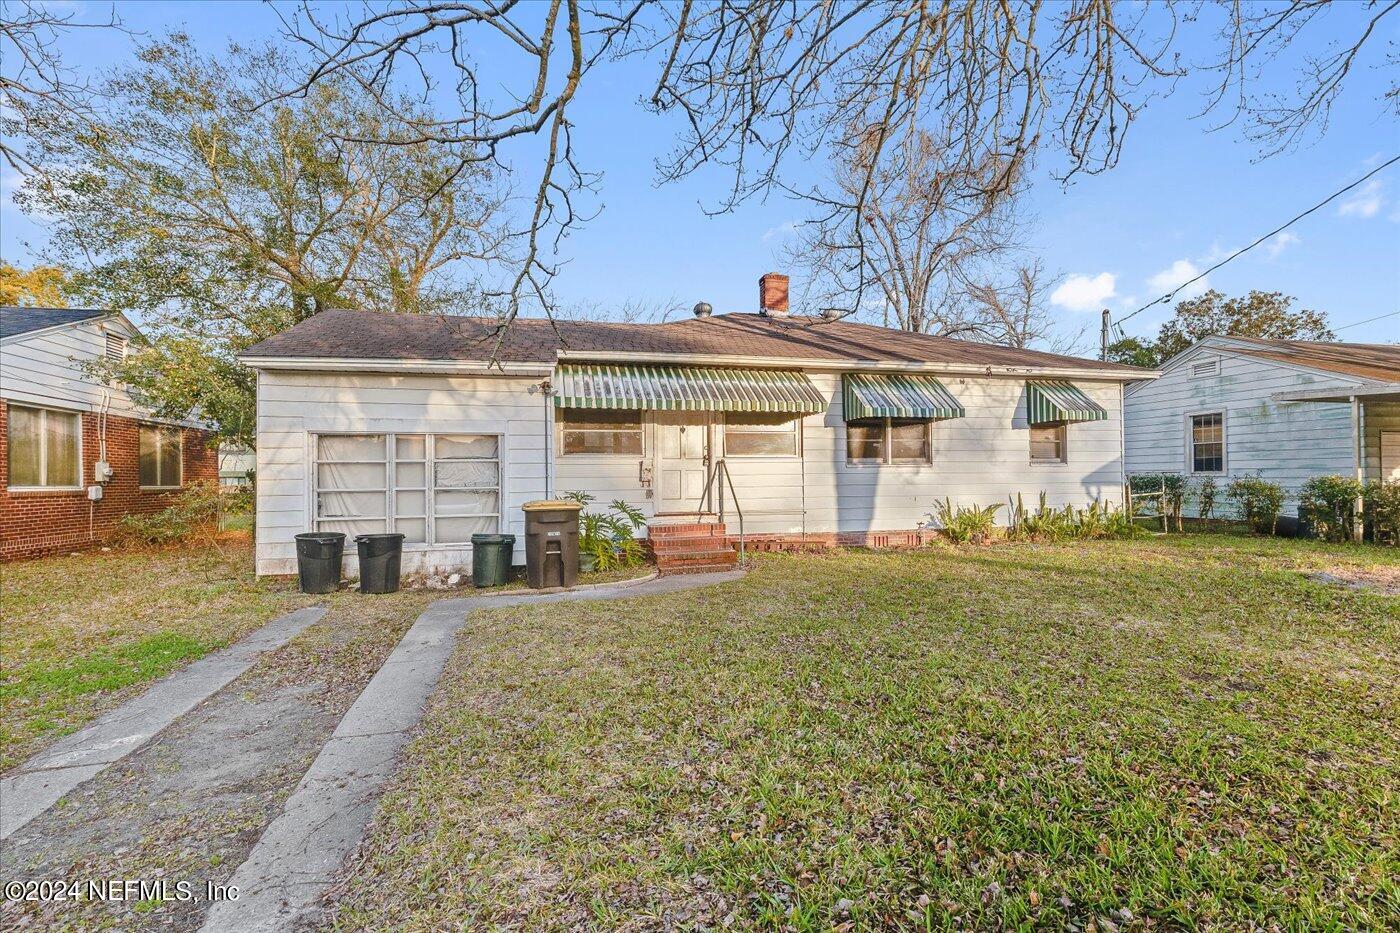 Jacksonville, FL home for sale located at 1723 HARKISHEIMER Avenue, Jacksonville, FL 32210